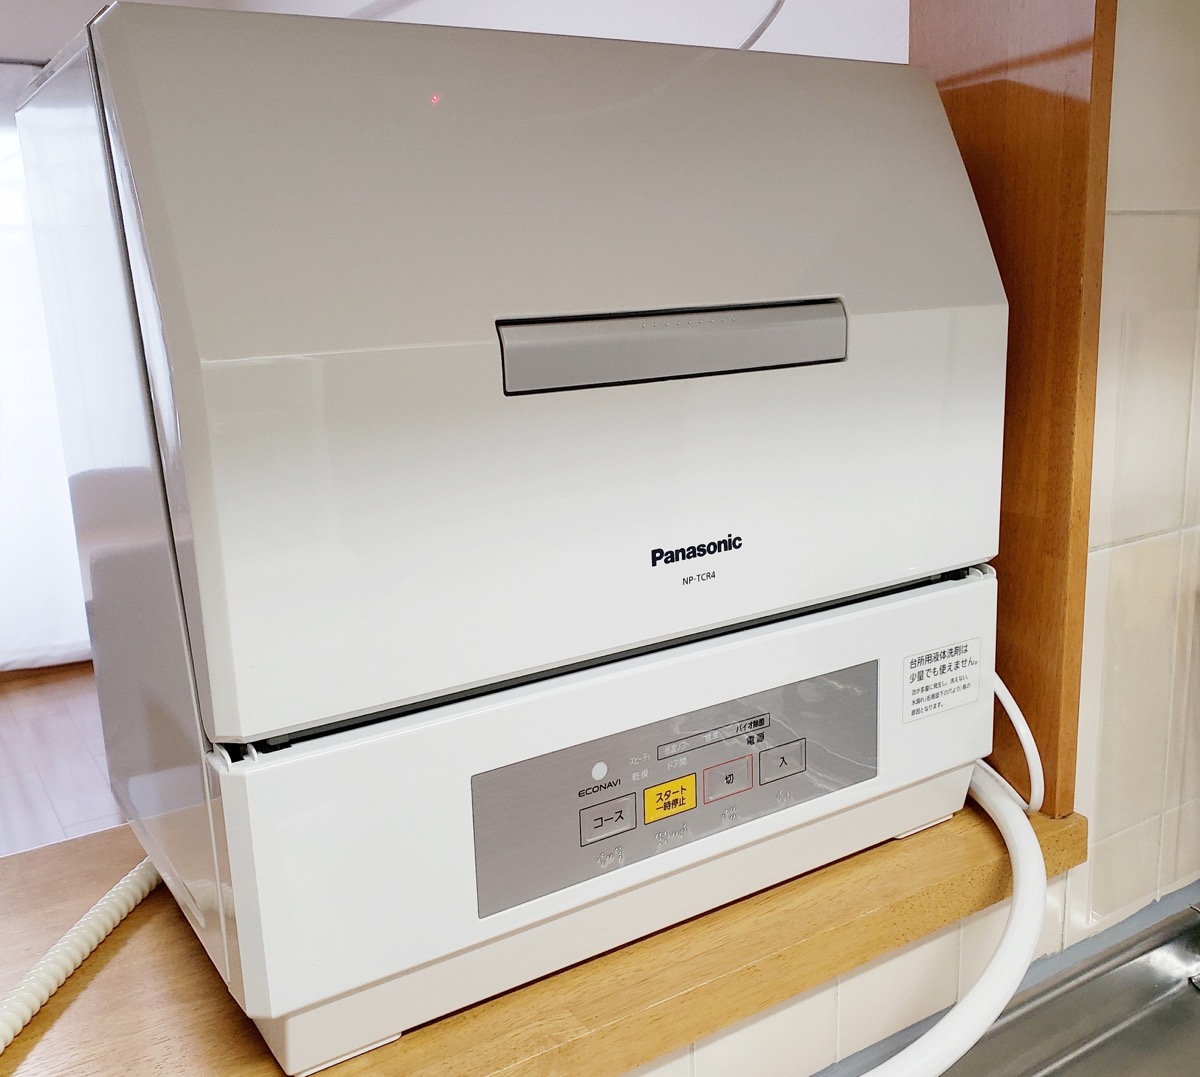 銀座店で購入 Panasonic 電気食器洗い乾燥機 2019年製 NP-TCR4-W その他